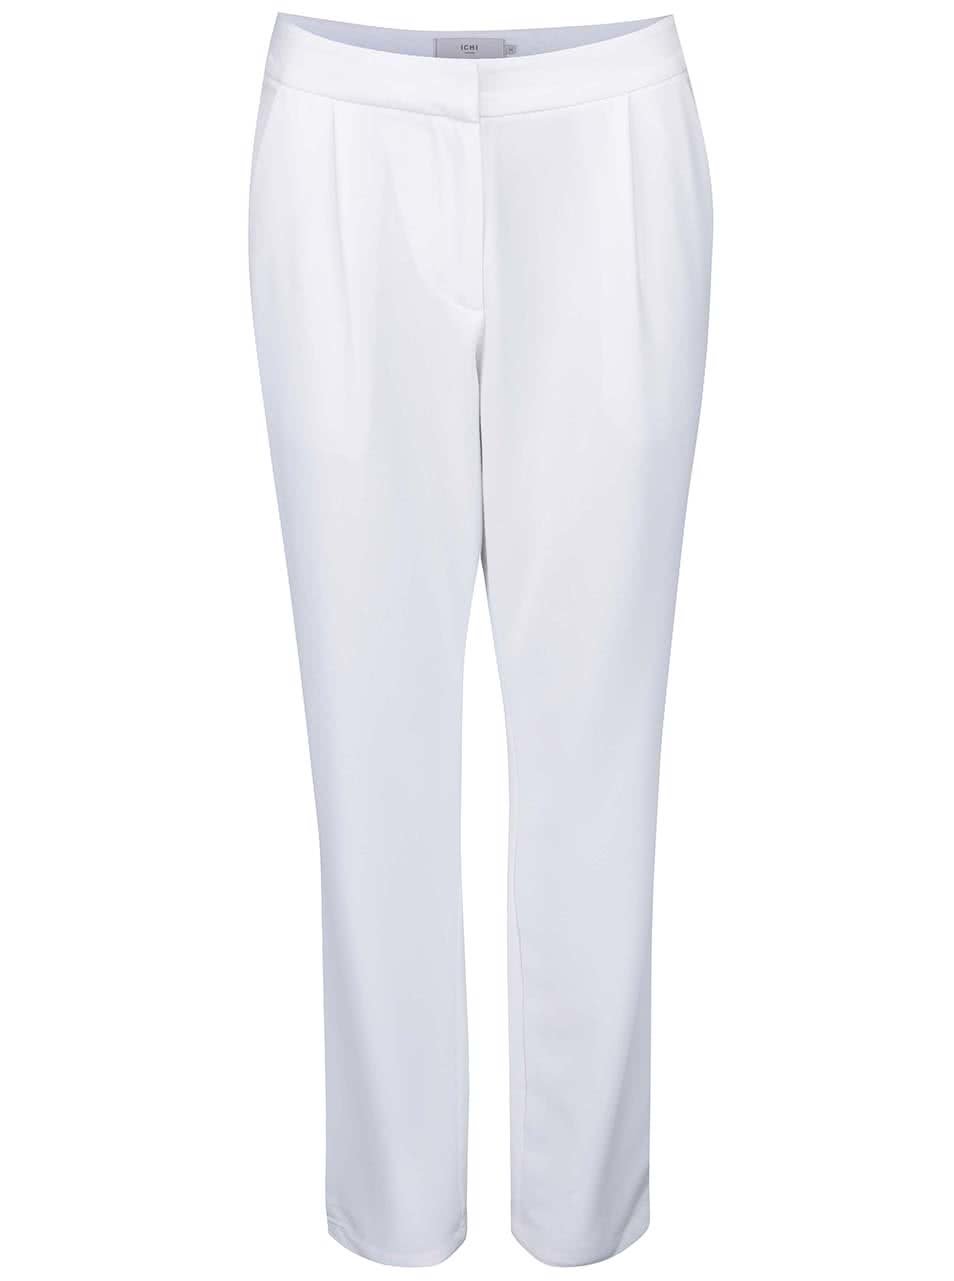 Bílé kalhoty rovného střihu ICHI Sirit